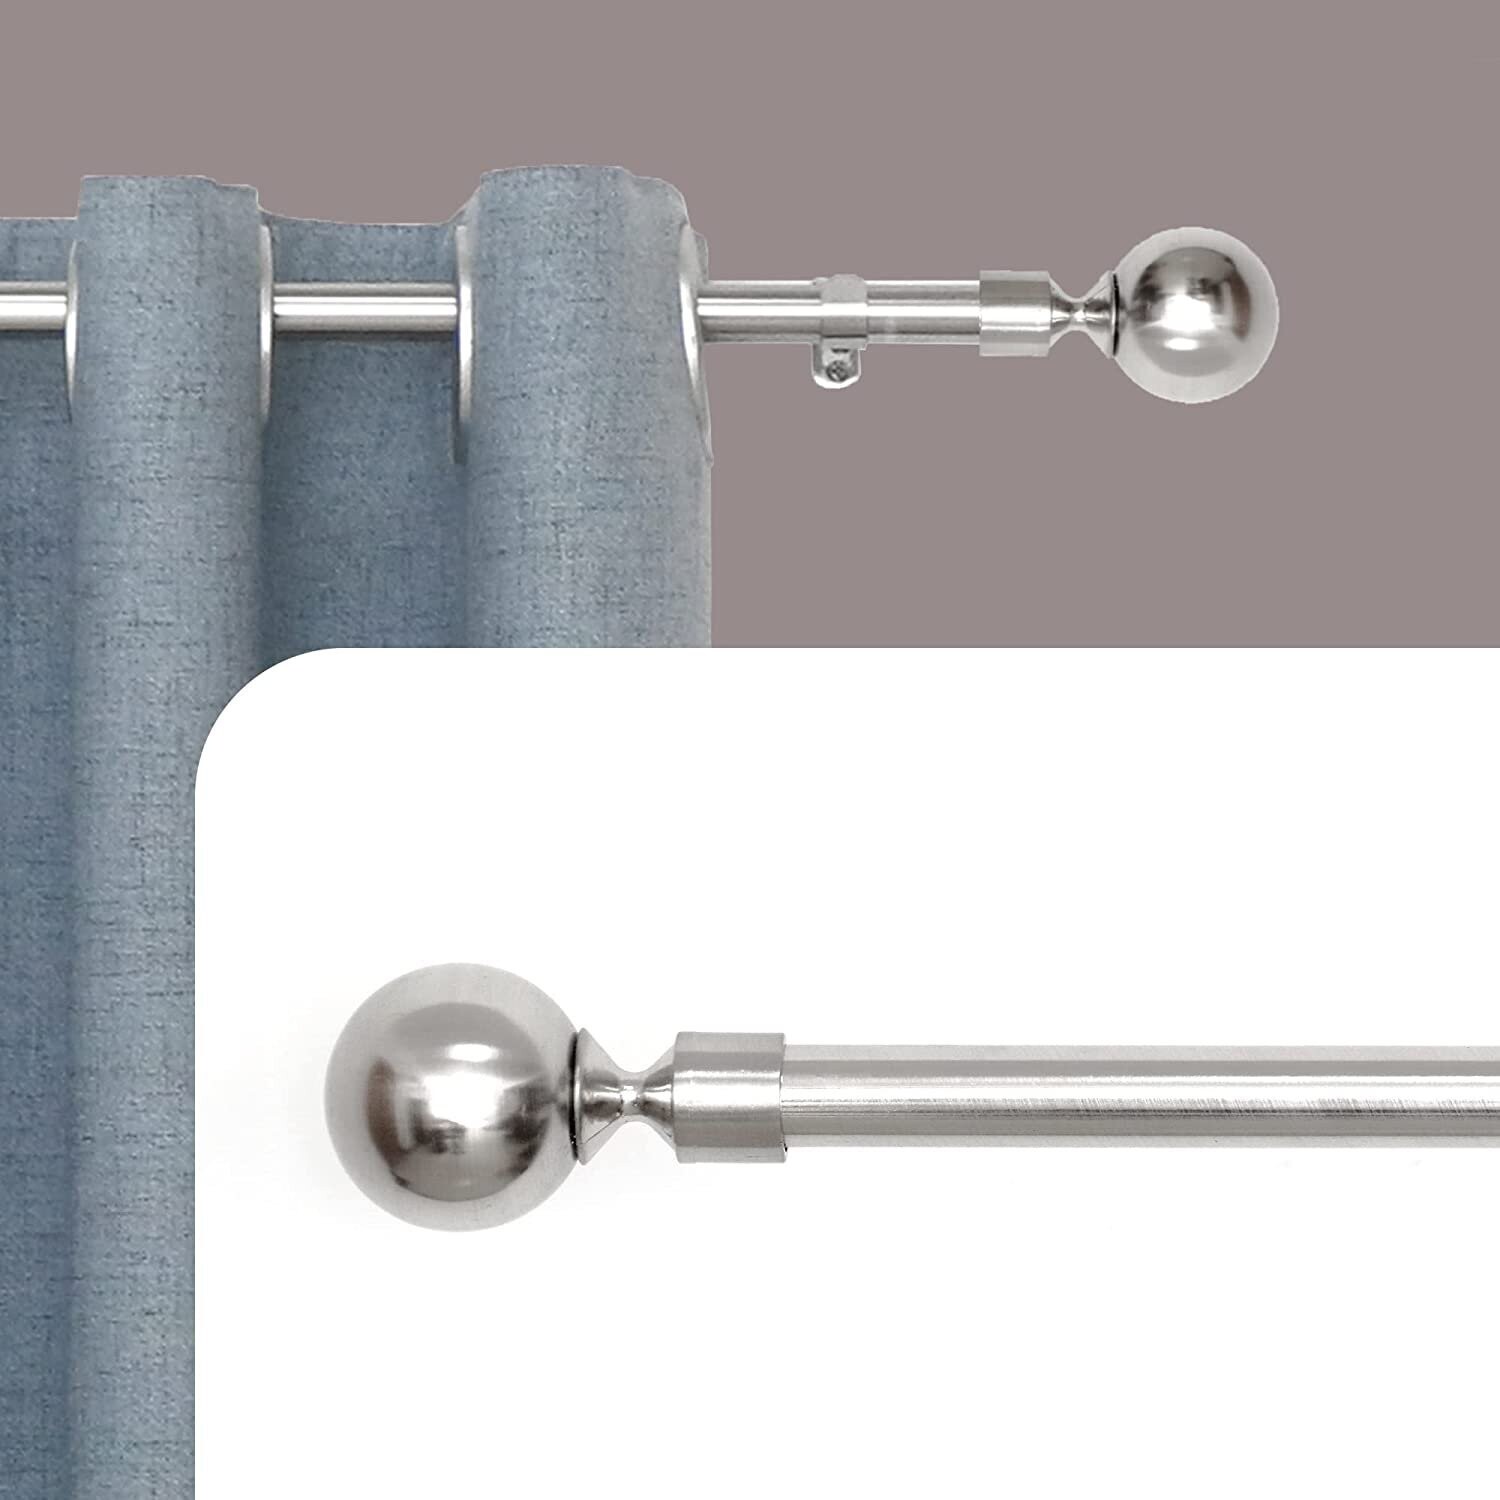 Barras extensibles para Cortina con terminales en Estilo de moderno M-bola incluye Soportes y extensible barra de 19-16 mm de grosor de fácil instalación Color acero, plata.